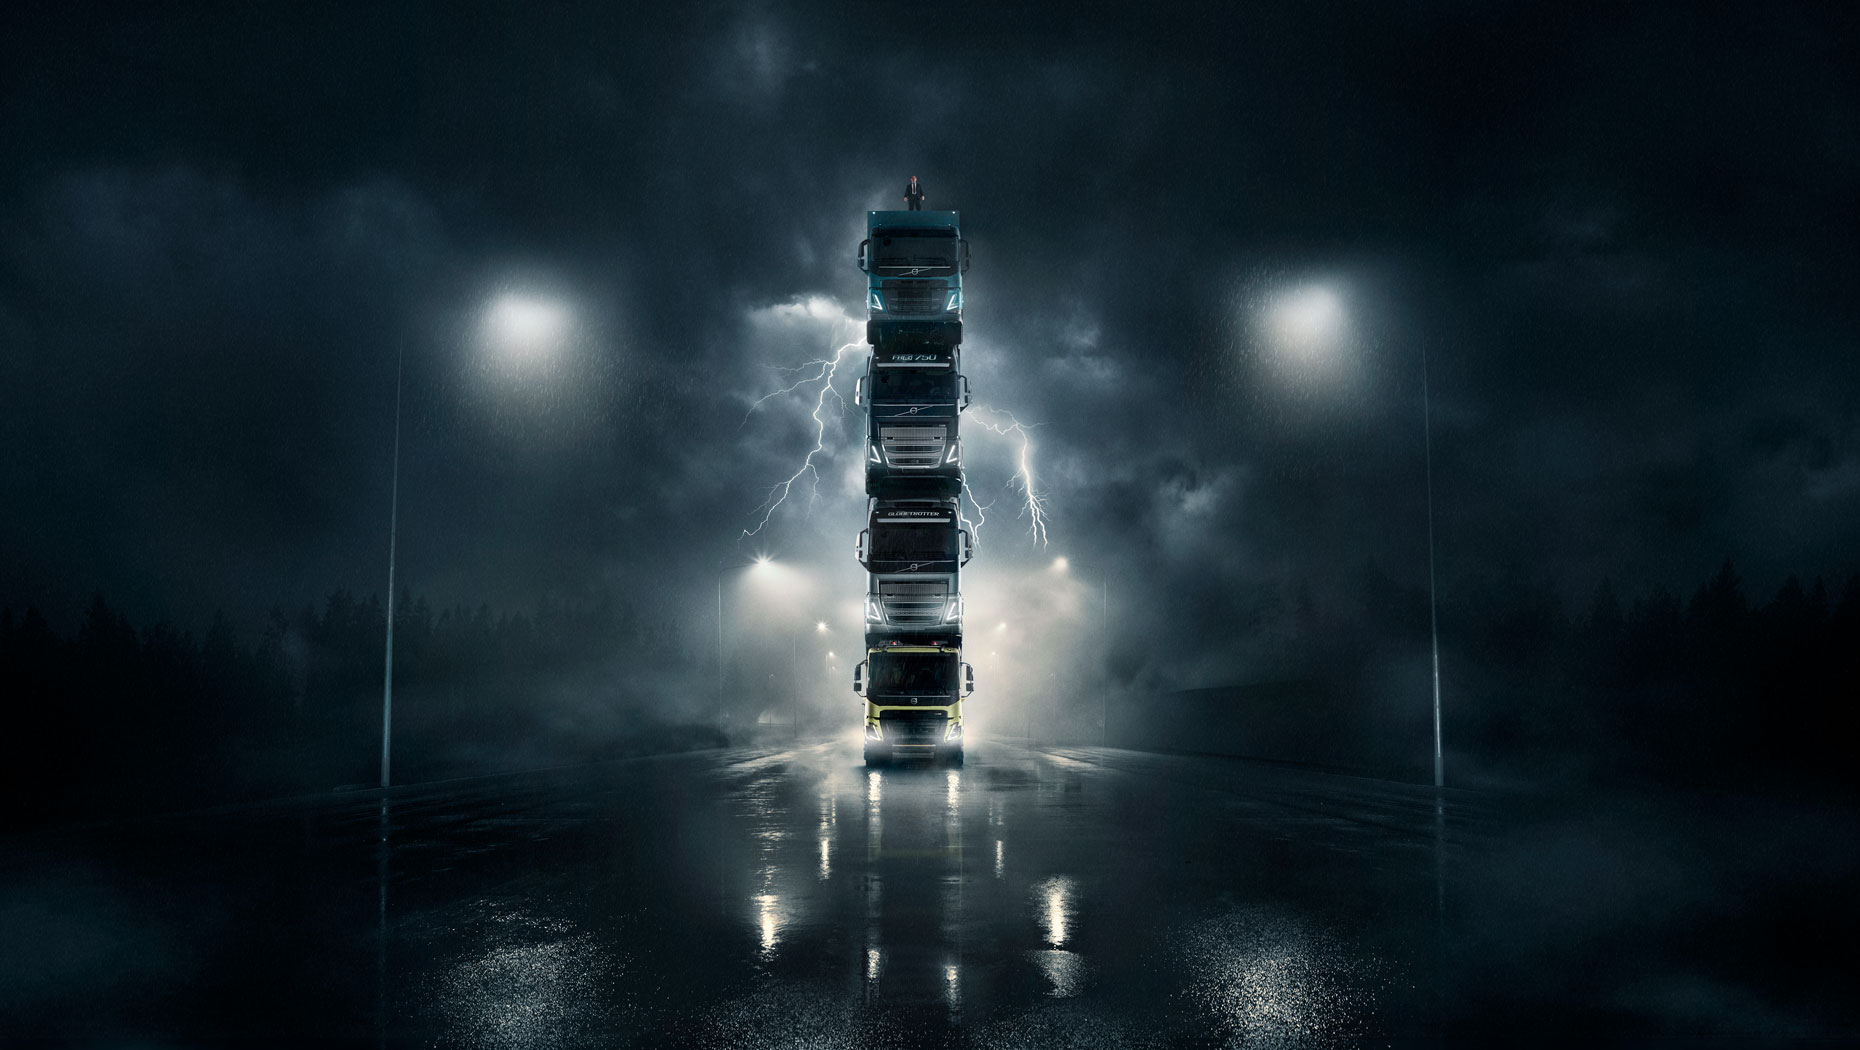 Volvo presenta cuatro camiones nuevos apilándolos uno encima de otro en un vídeo espectacular y, como colofón, coloca a su presidente en lo más alto